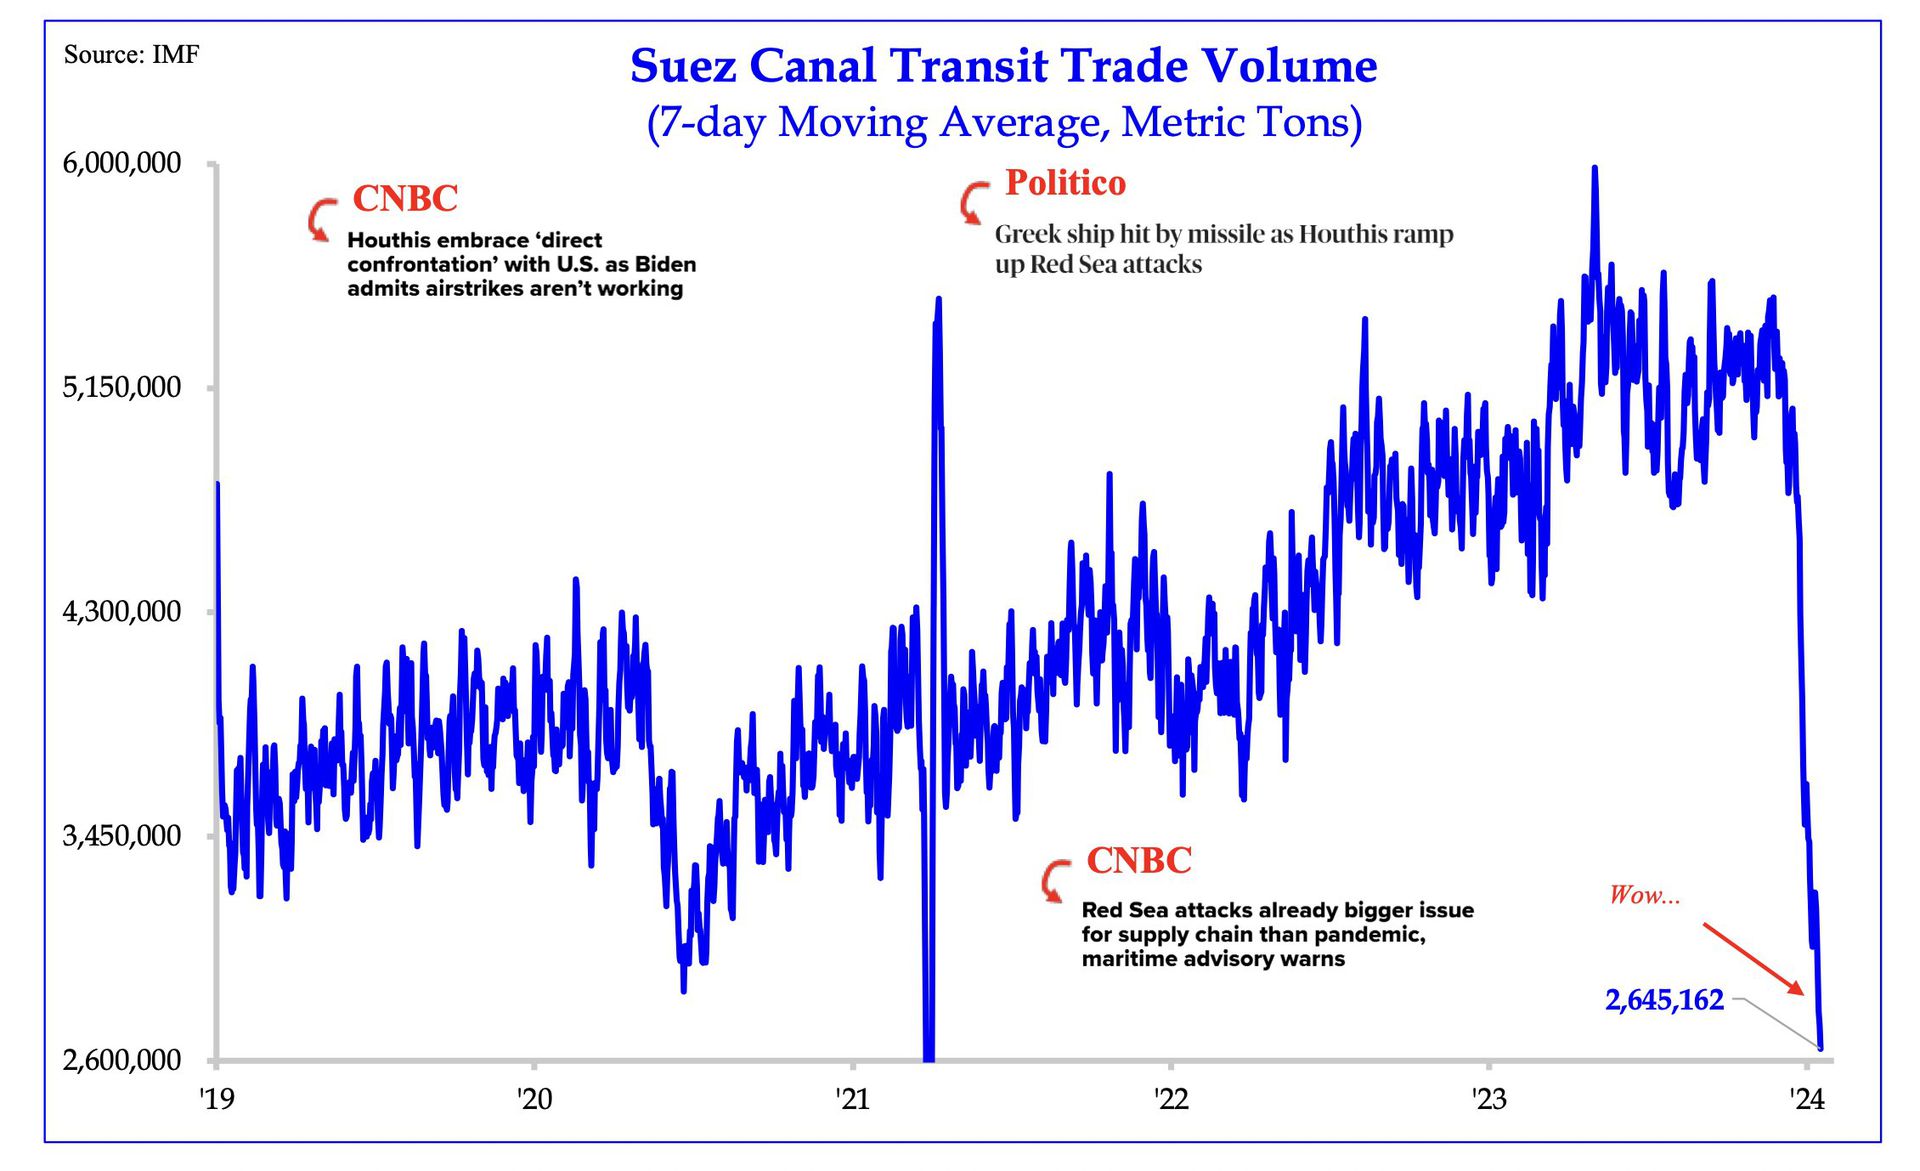 Das Diagramm zeigt das Handelsvolumen des Suezkanals als 7-Tage gleitenden Durchschnitt in metrischen Tonnen von 2019 bis 2024, mit markanten Einbrüchen und Anstiegen sowie zugehörigen Nachrichtenüberlappungen von CNBC und Politico zu geopolitischen Ereignissen.